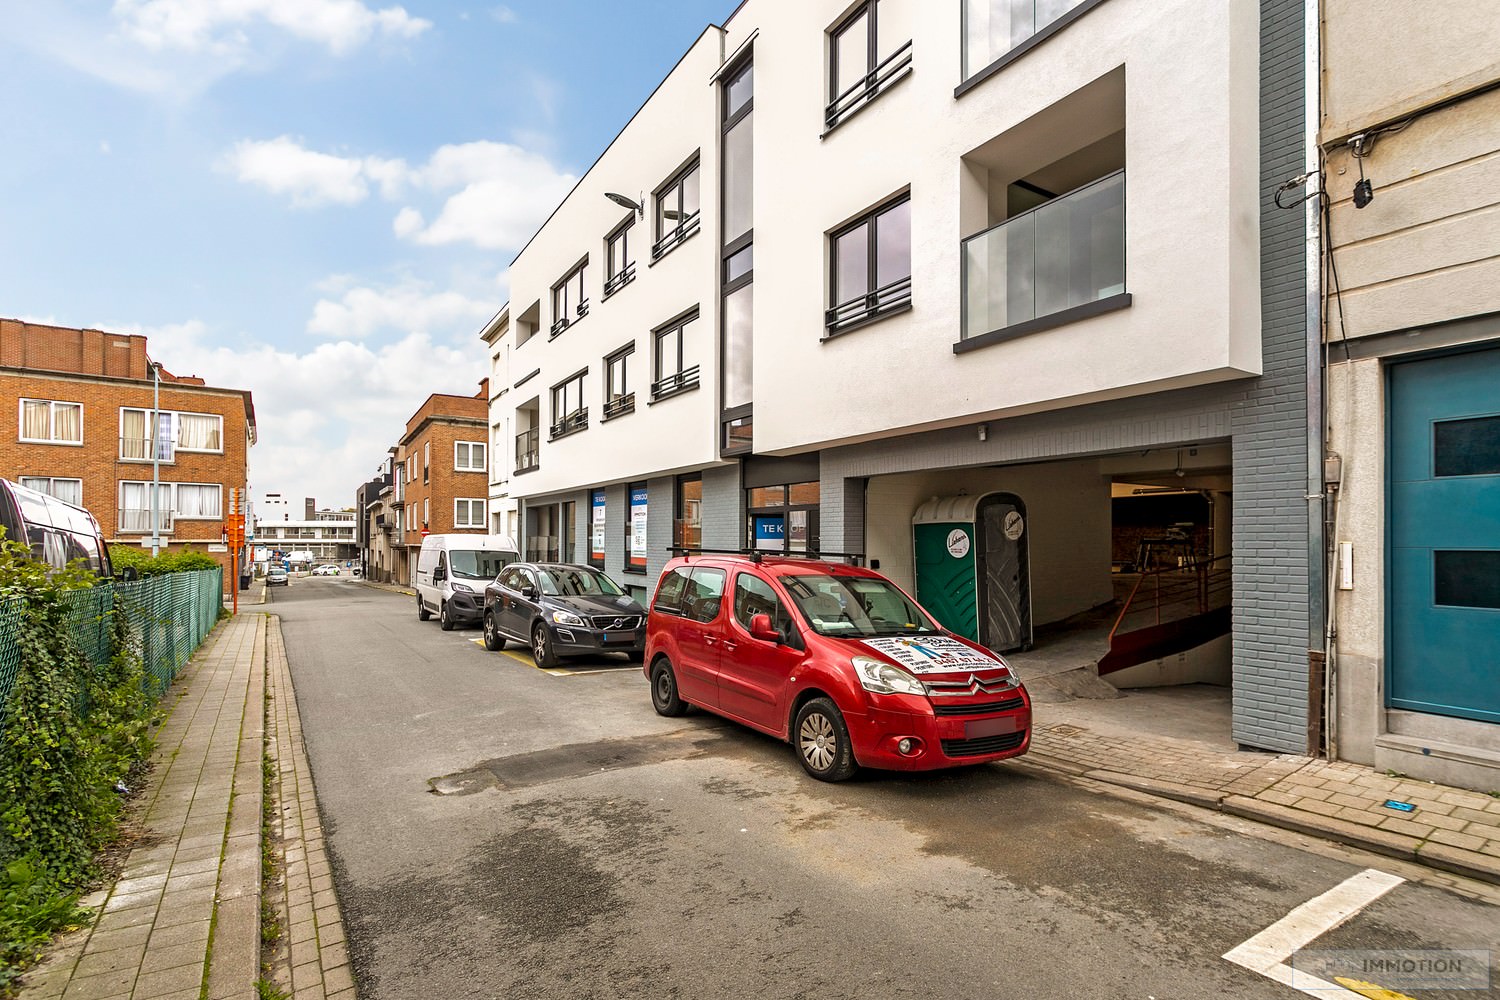 RESIDENTIE "CASTEL" - 95 % VERKOCHT- Kleinschalige residentie in het centrum van Kortrijk !